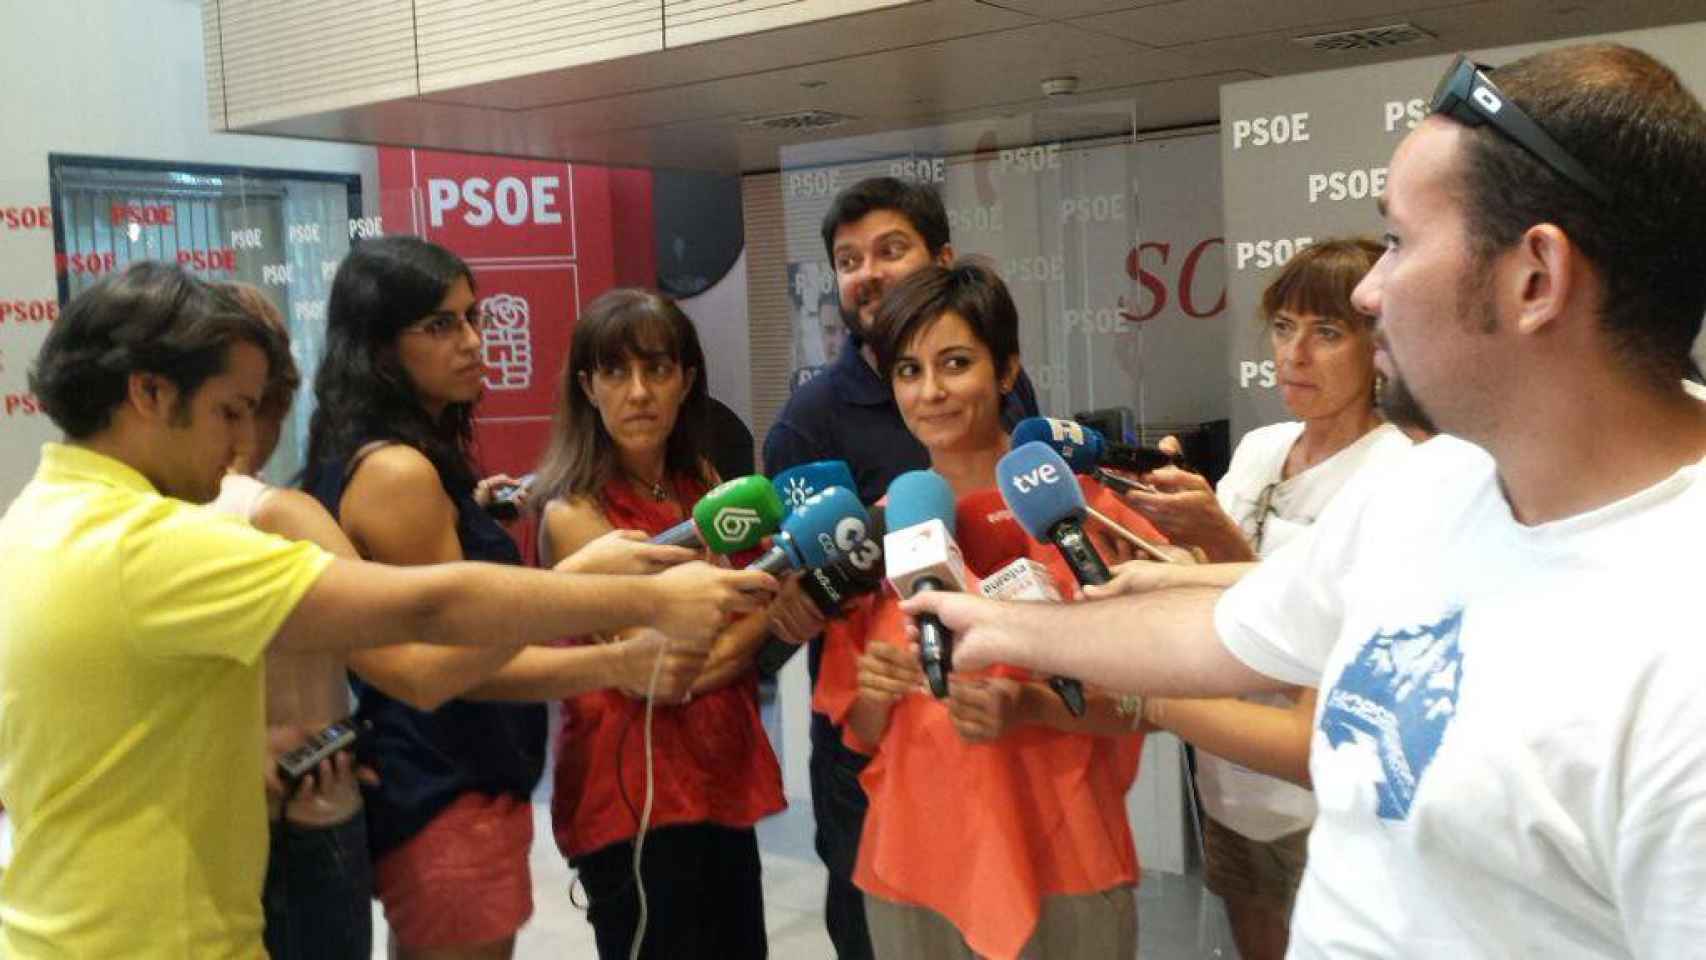 La secretaria general adjunta del Grupo Socialista en el Congreso, Isabel Rodríguez, en declaraciones a la prensa en la sede central del PSOE, en Madrid